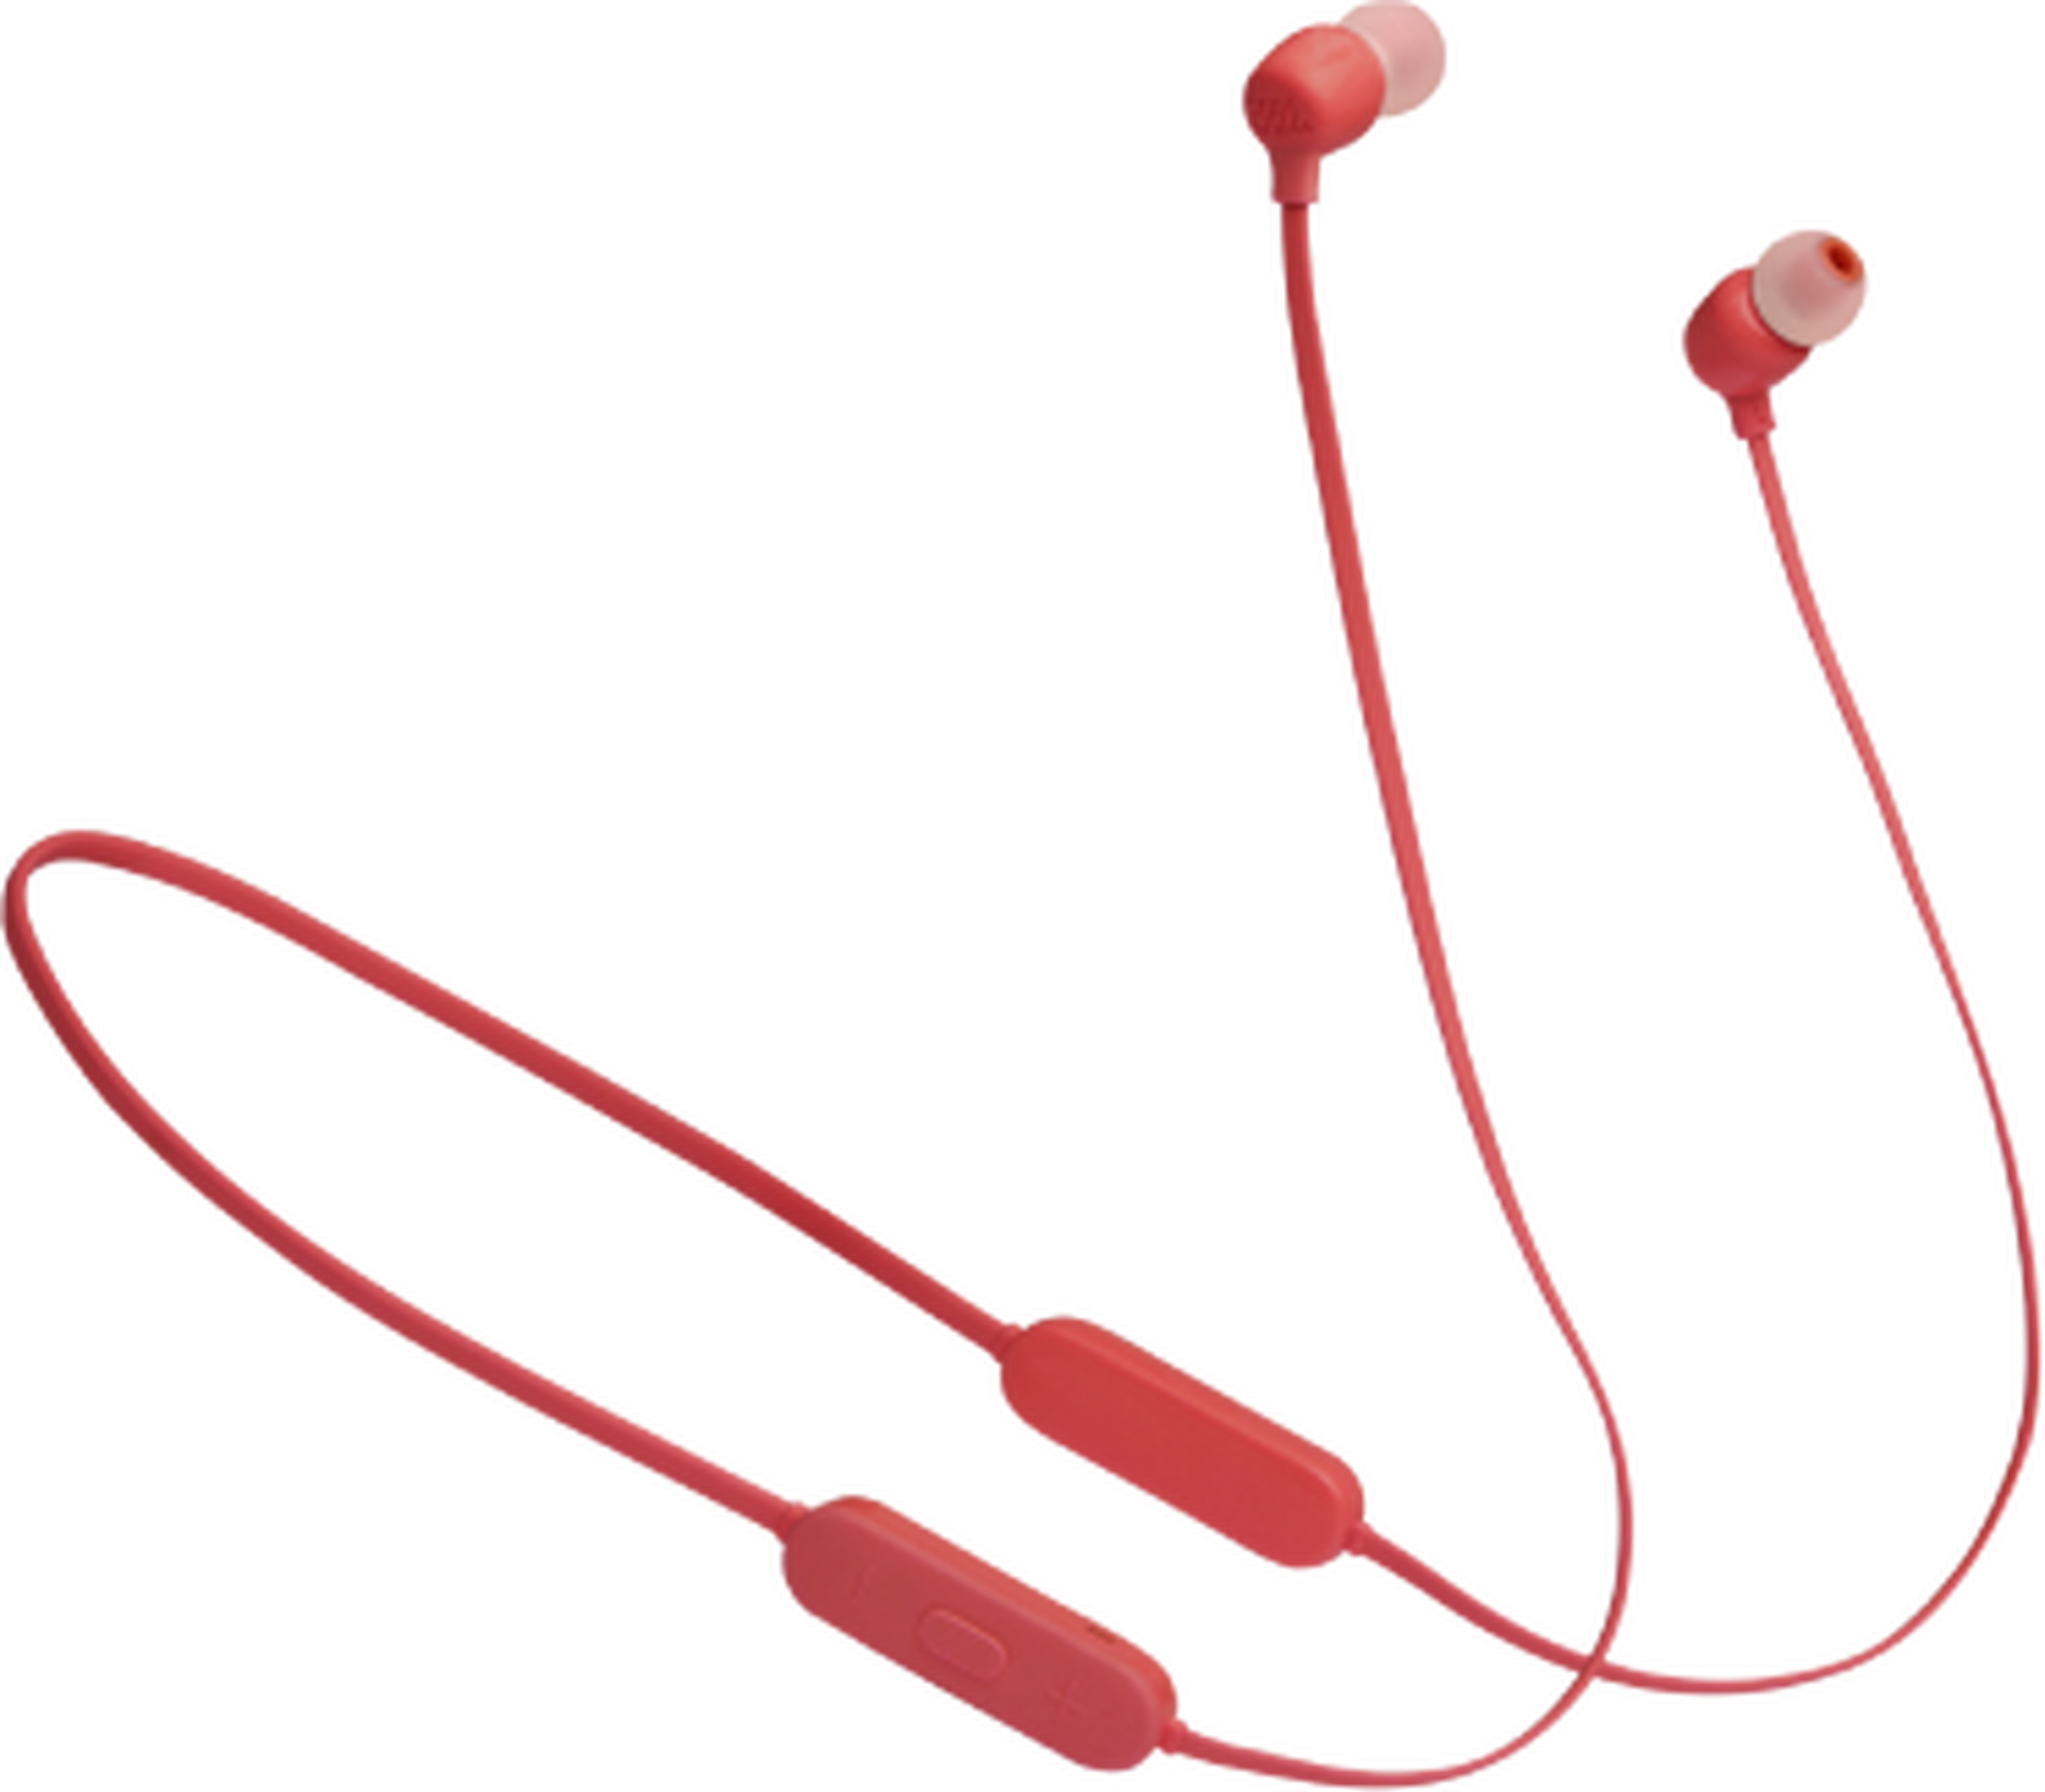 سماعة الاذن اللاسلكية من جي بي ال (JBL TUNE125BT) - أحمر